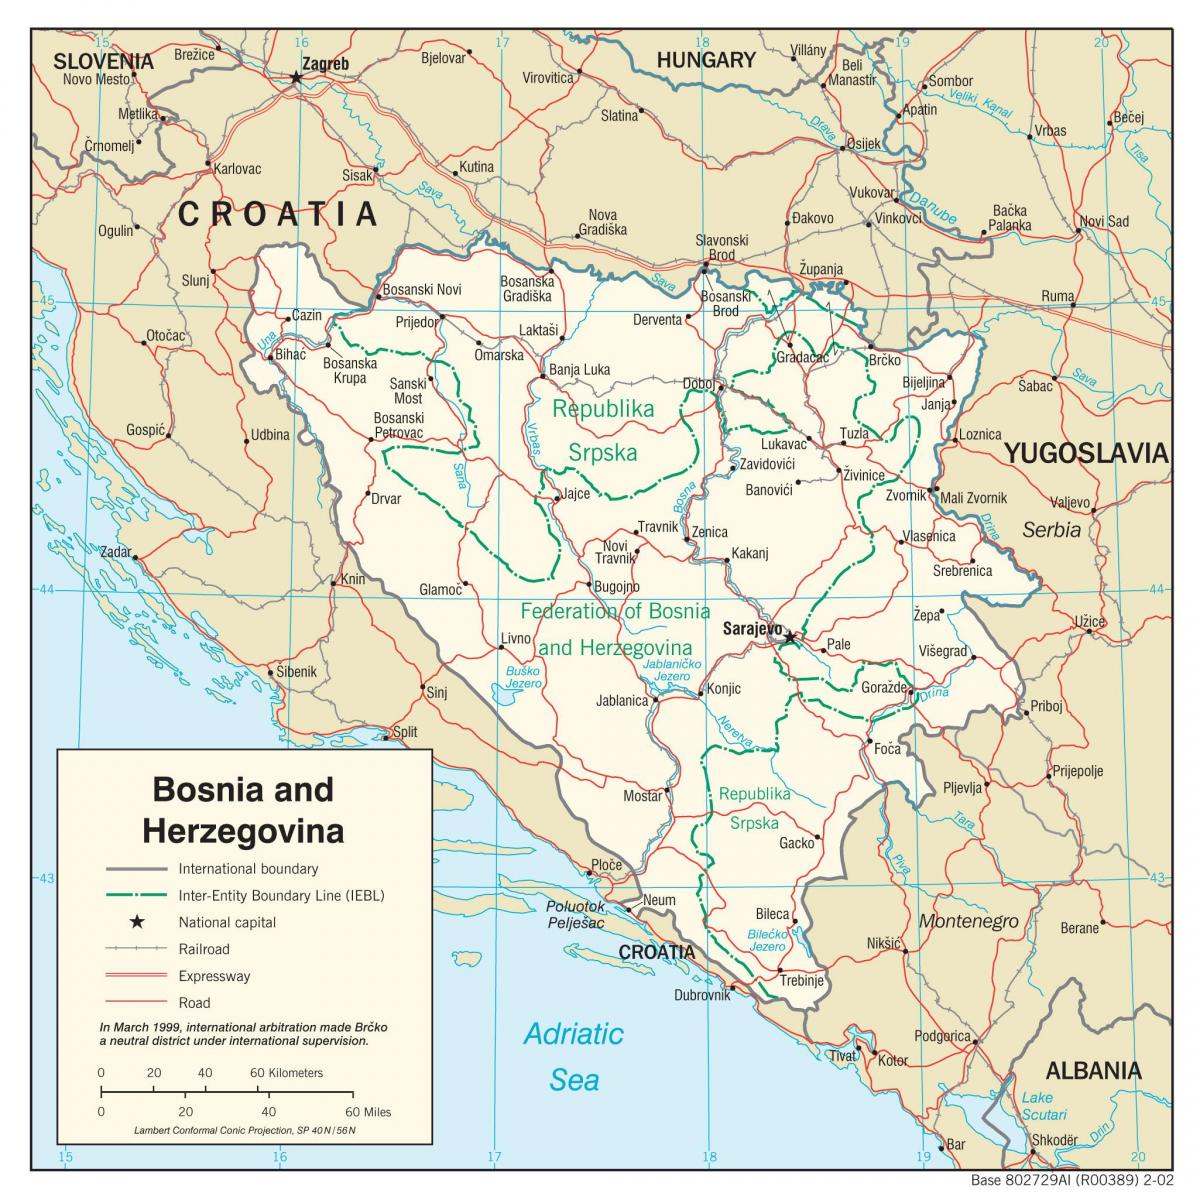 Bosni-Èzegovini kat jeyografik